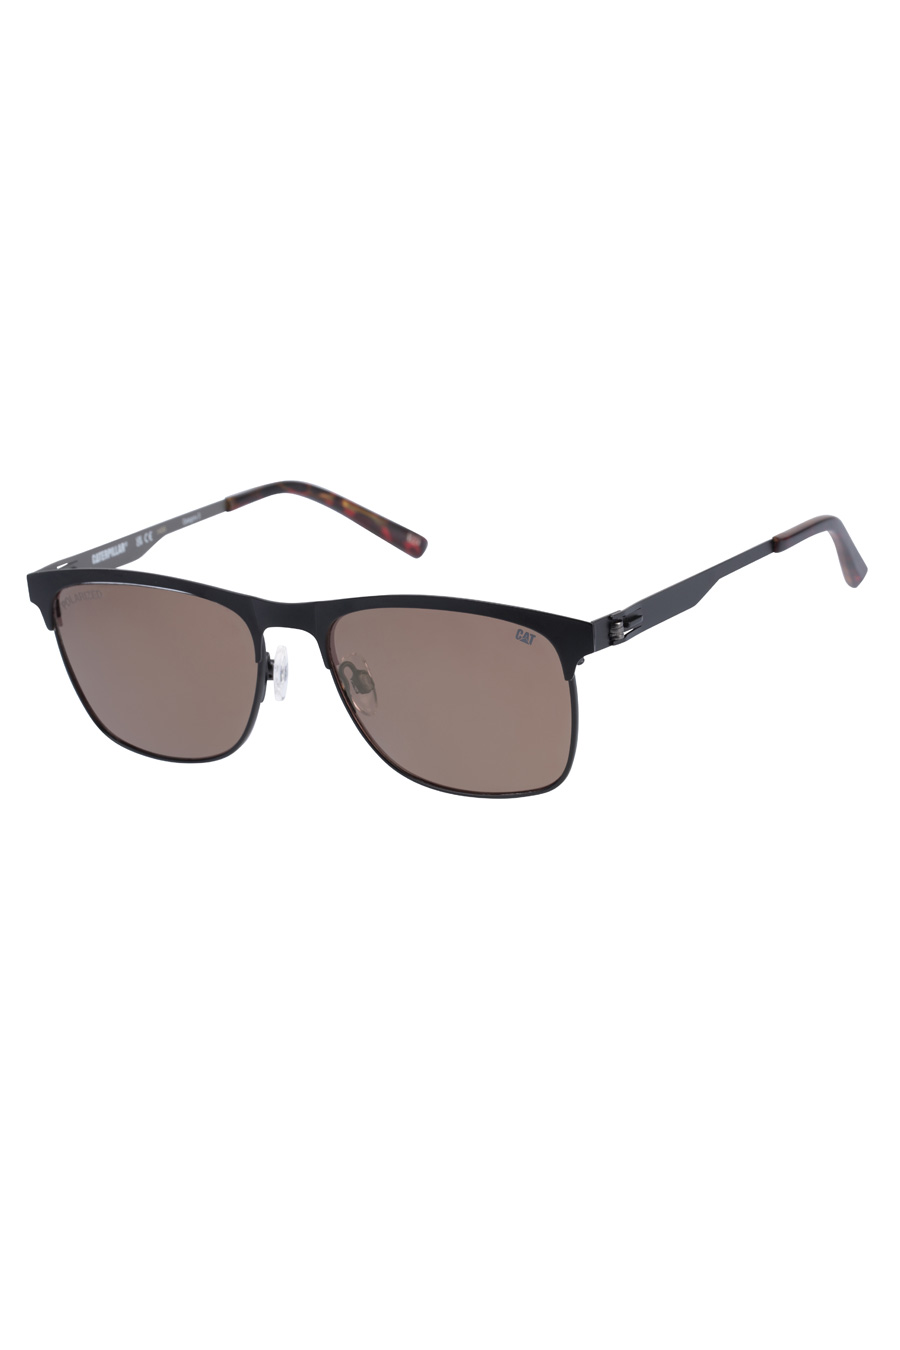 Sunglasses CAT CPS-8507-004P